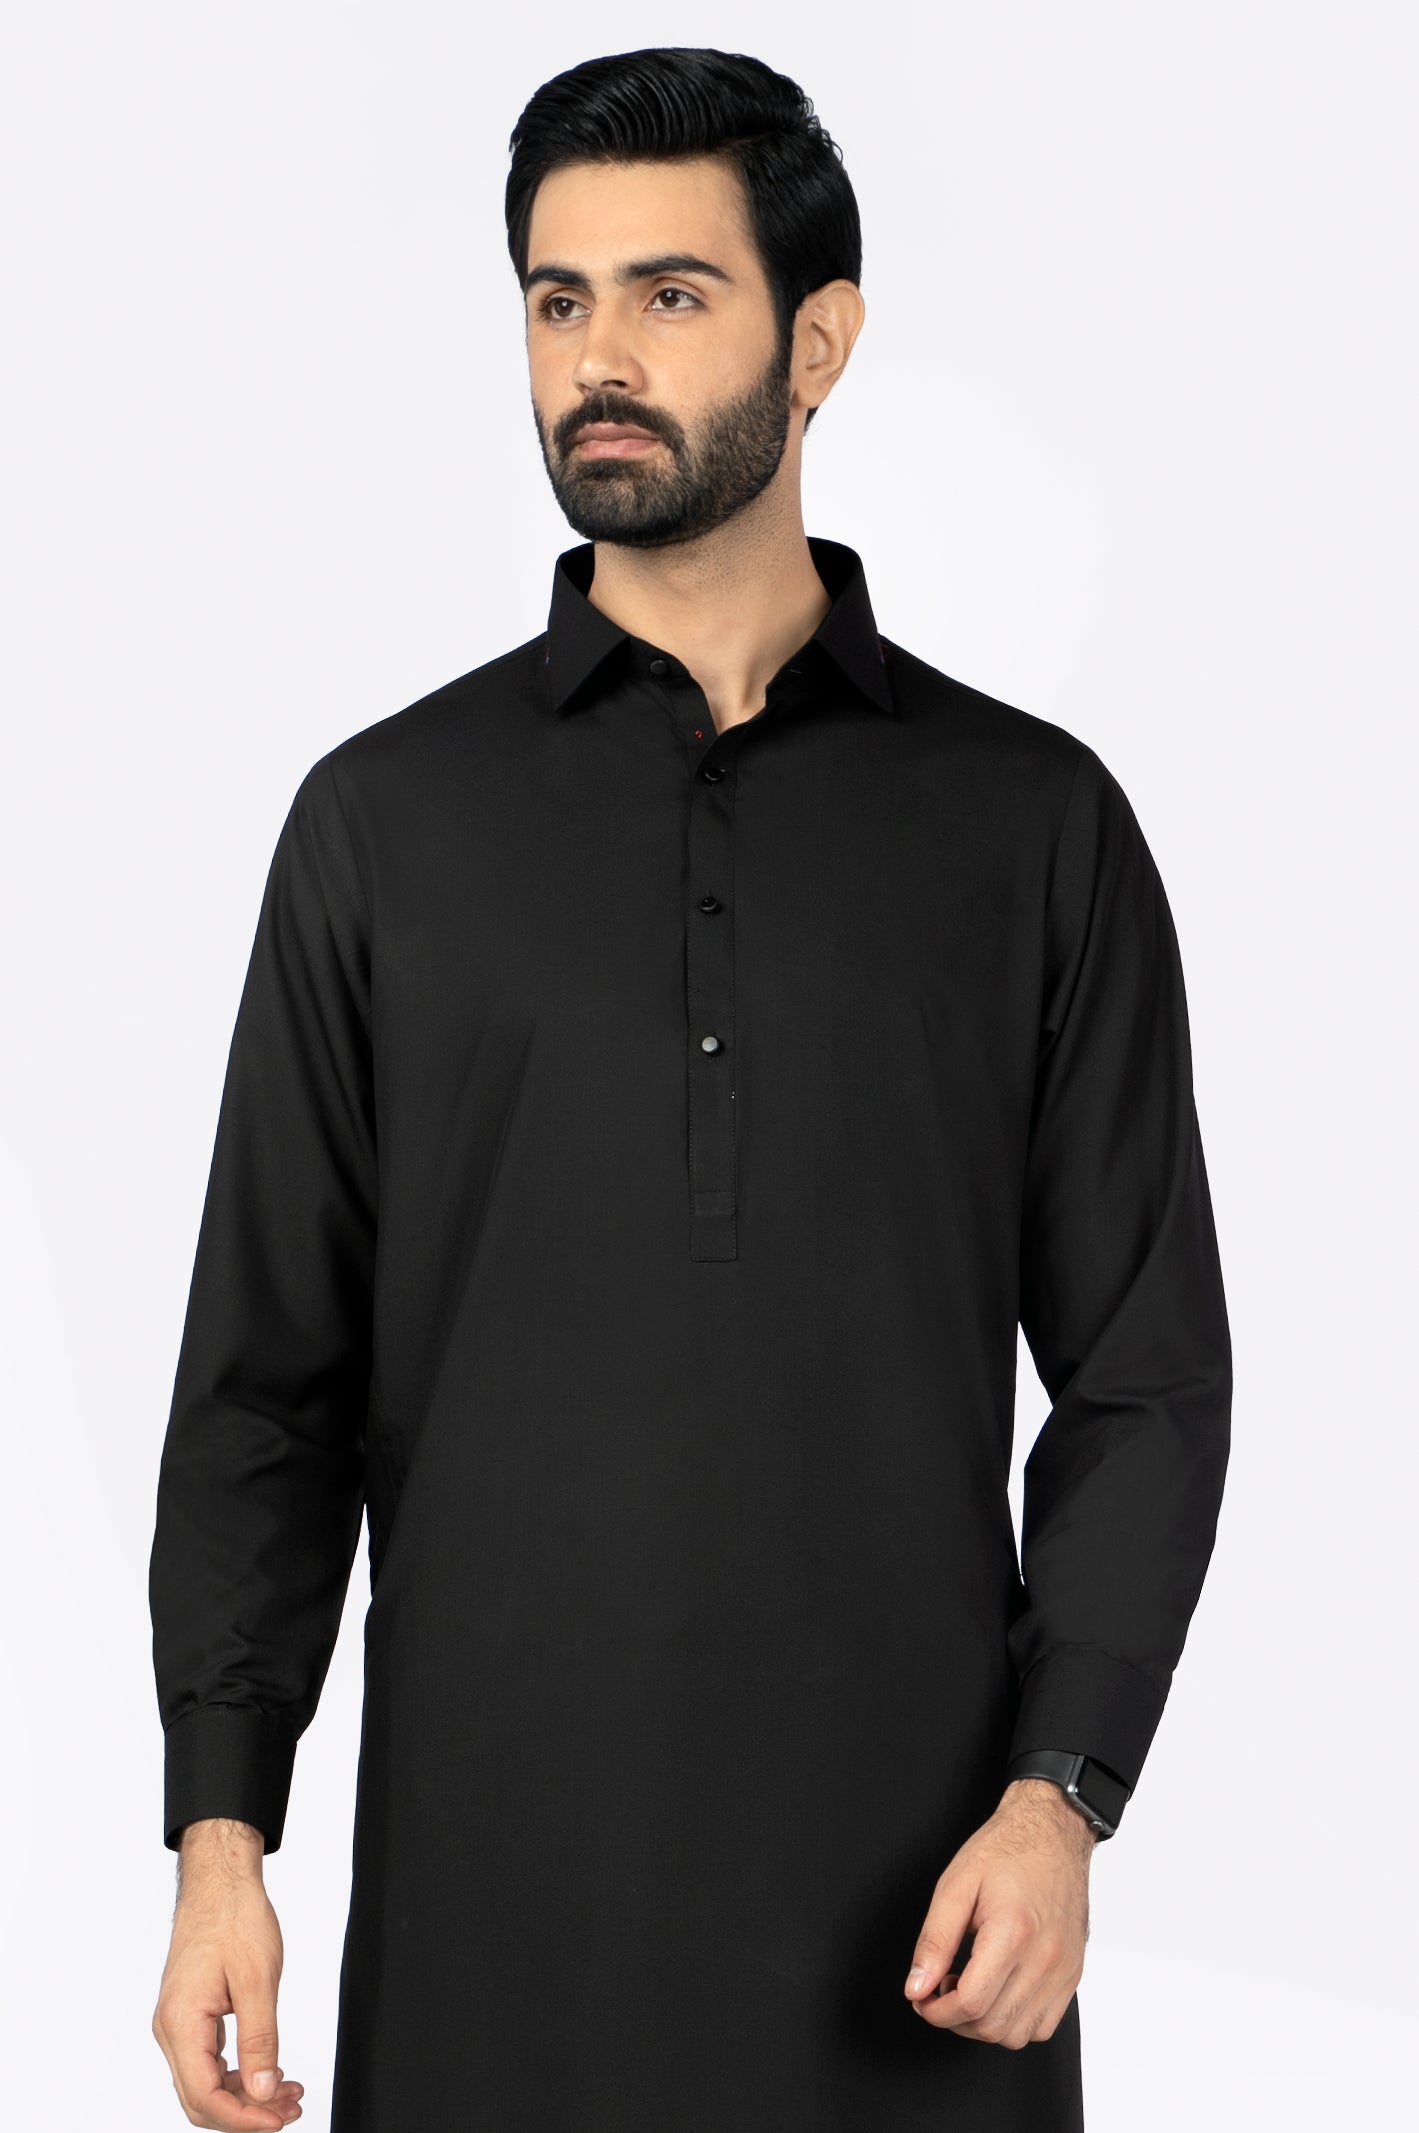 Black Wash & Wear Shalwar Kameez From Diners